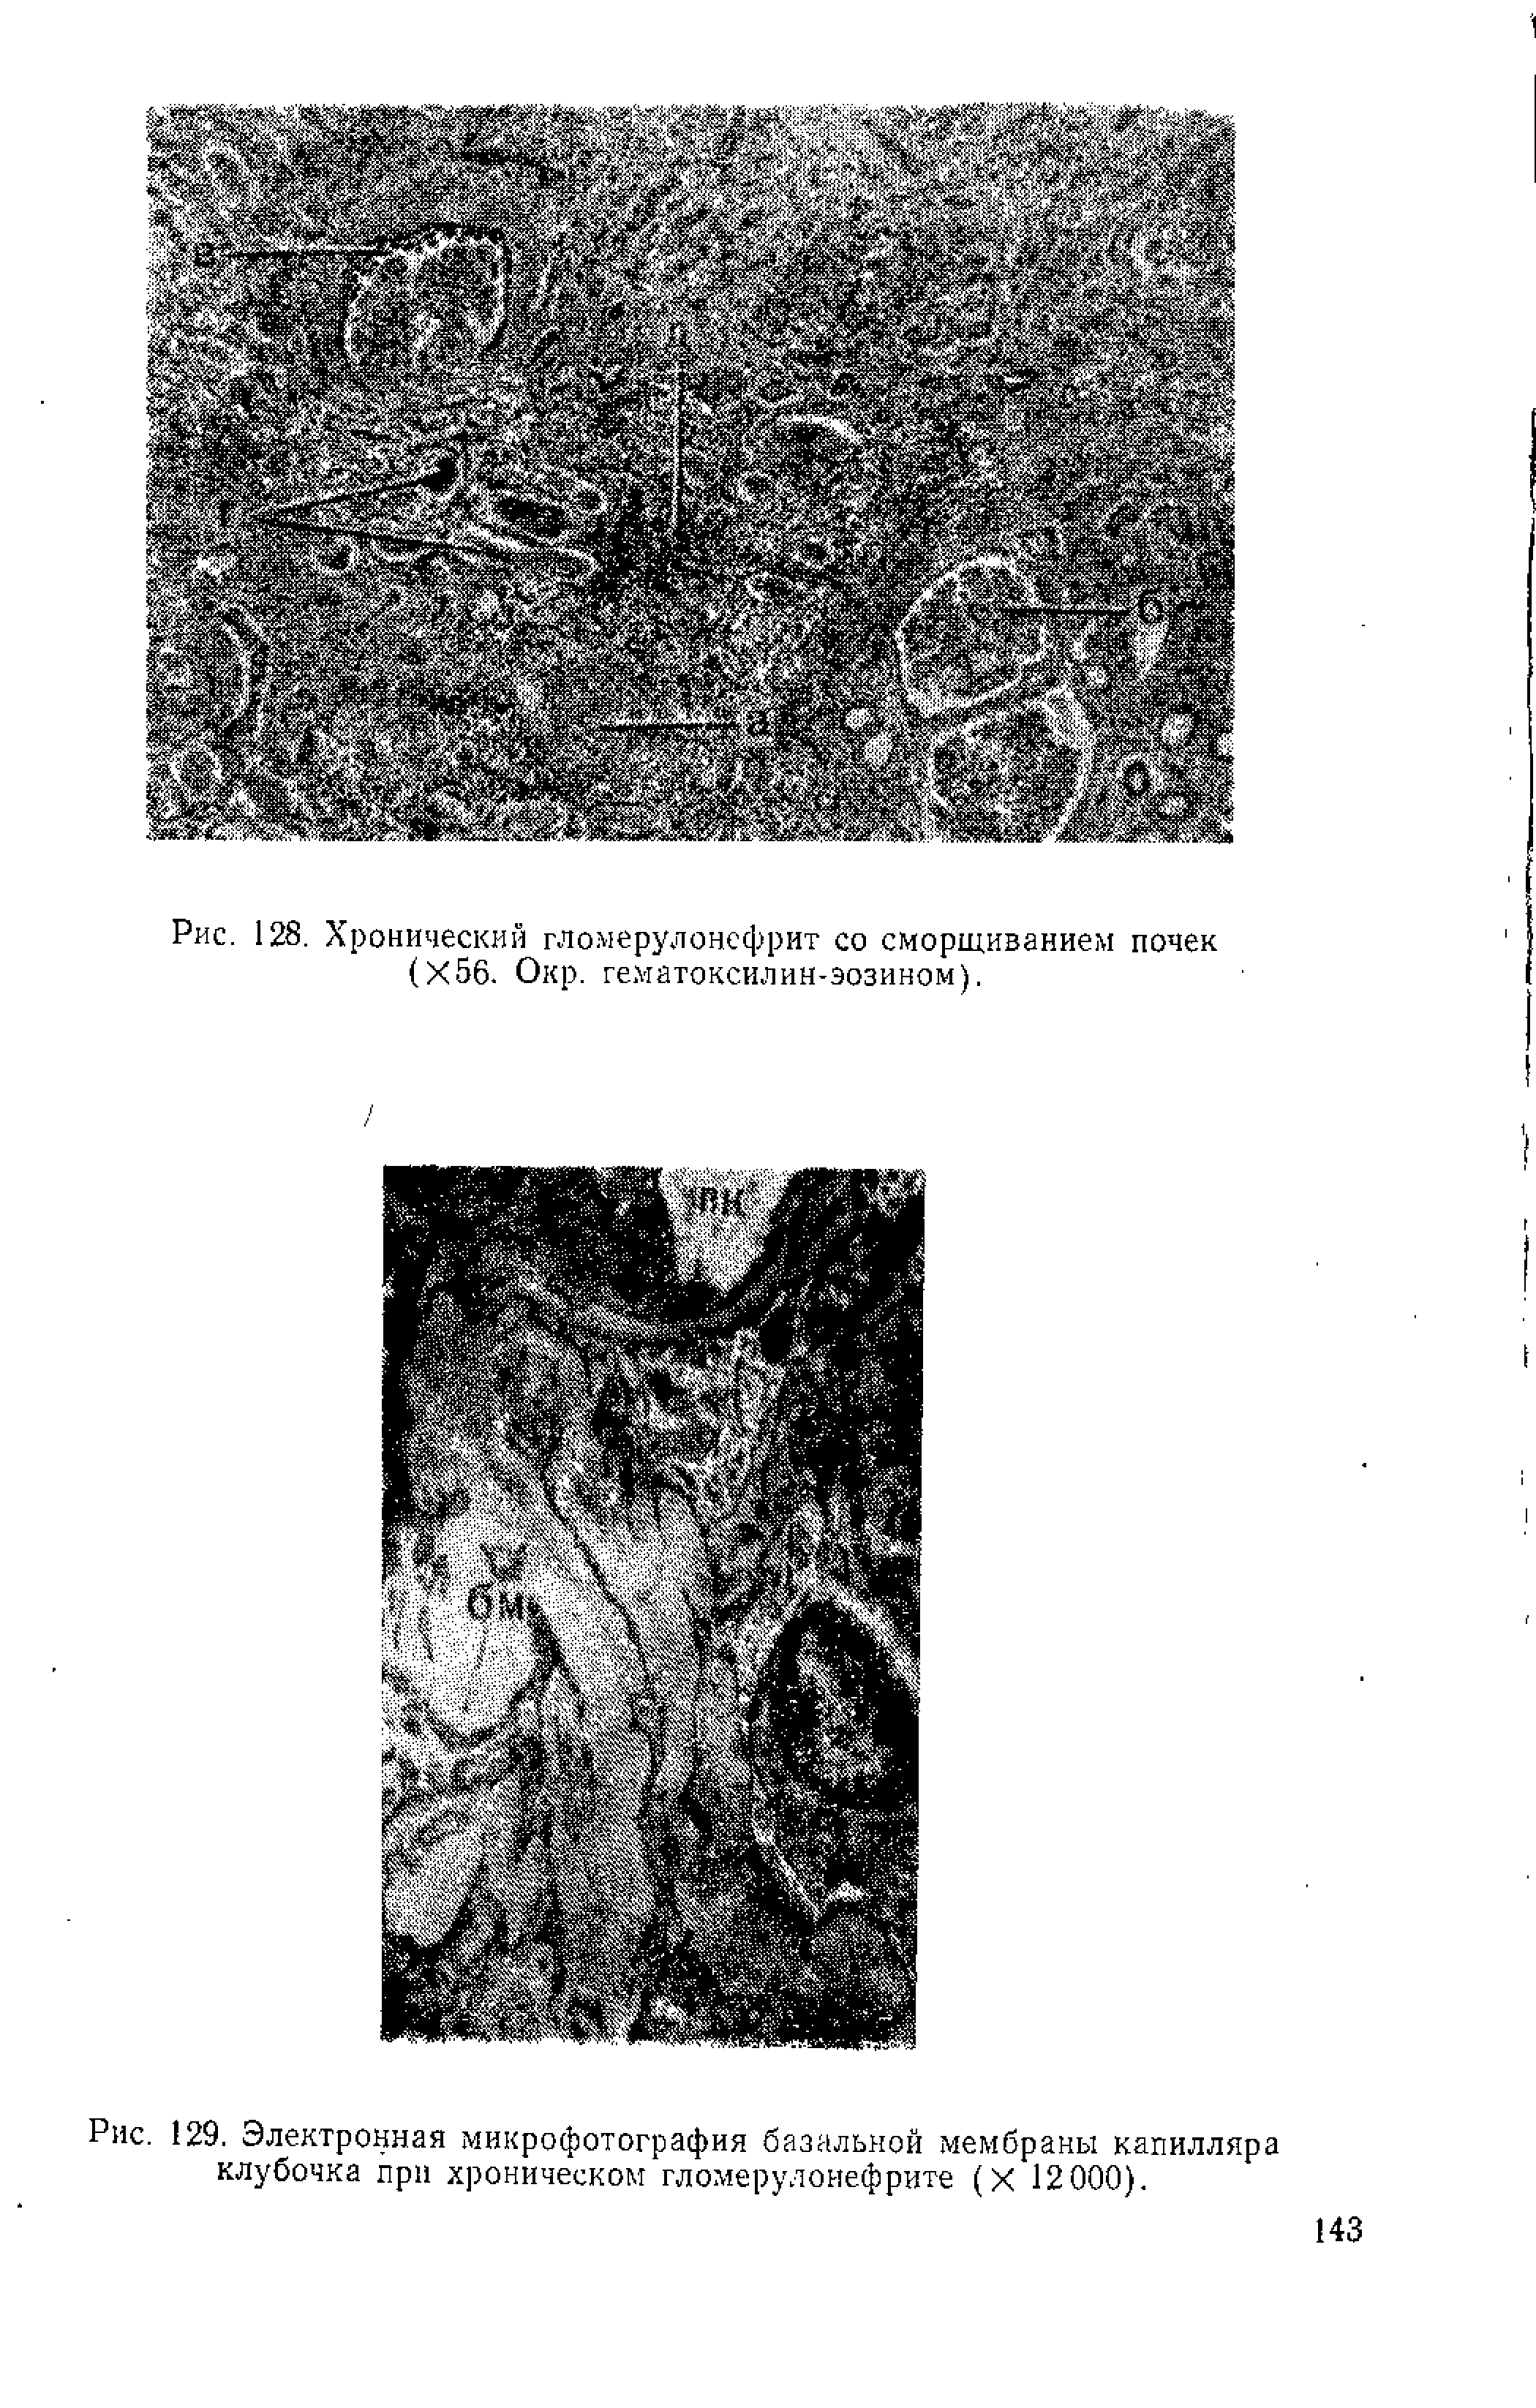 Рис. 129. Электронная микрофотография базальной мембраны капилляра клубочка при хроническом гломерулонефрите (X 12000).